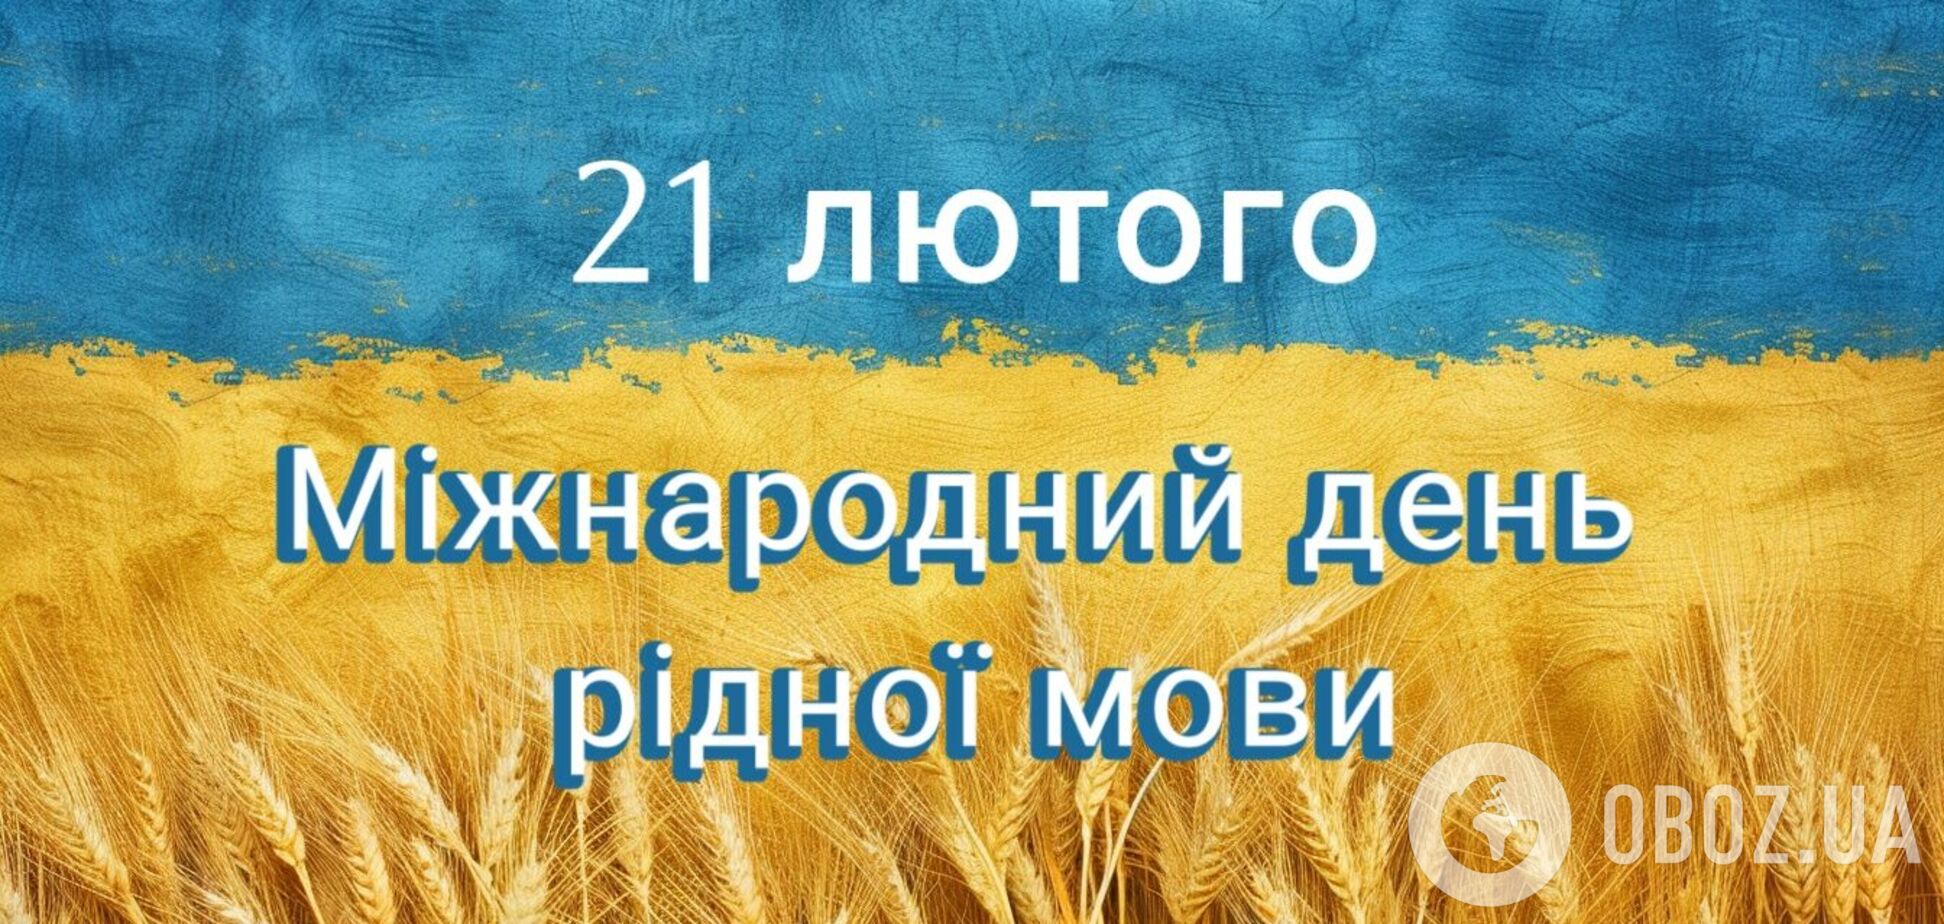 День родного языка: история, интересные факты и искренние поздравления для украинцев